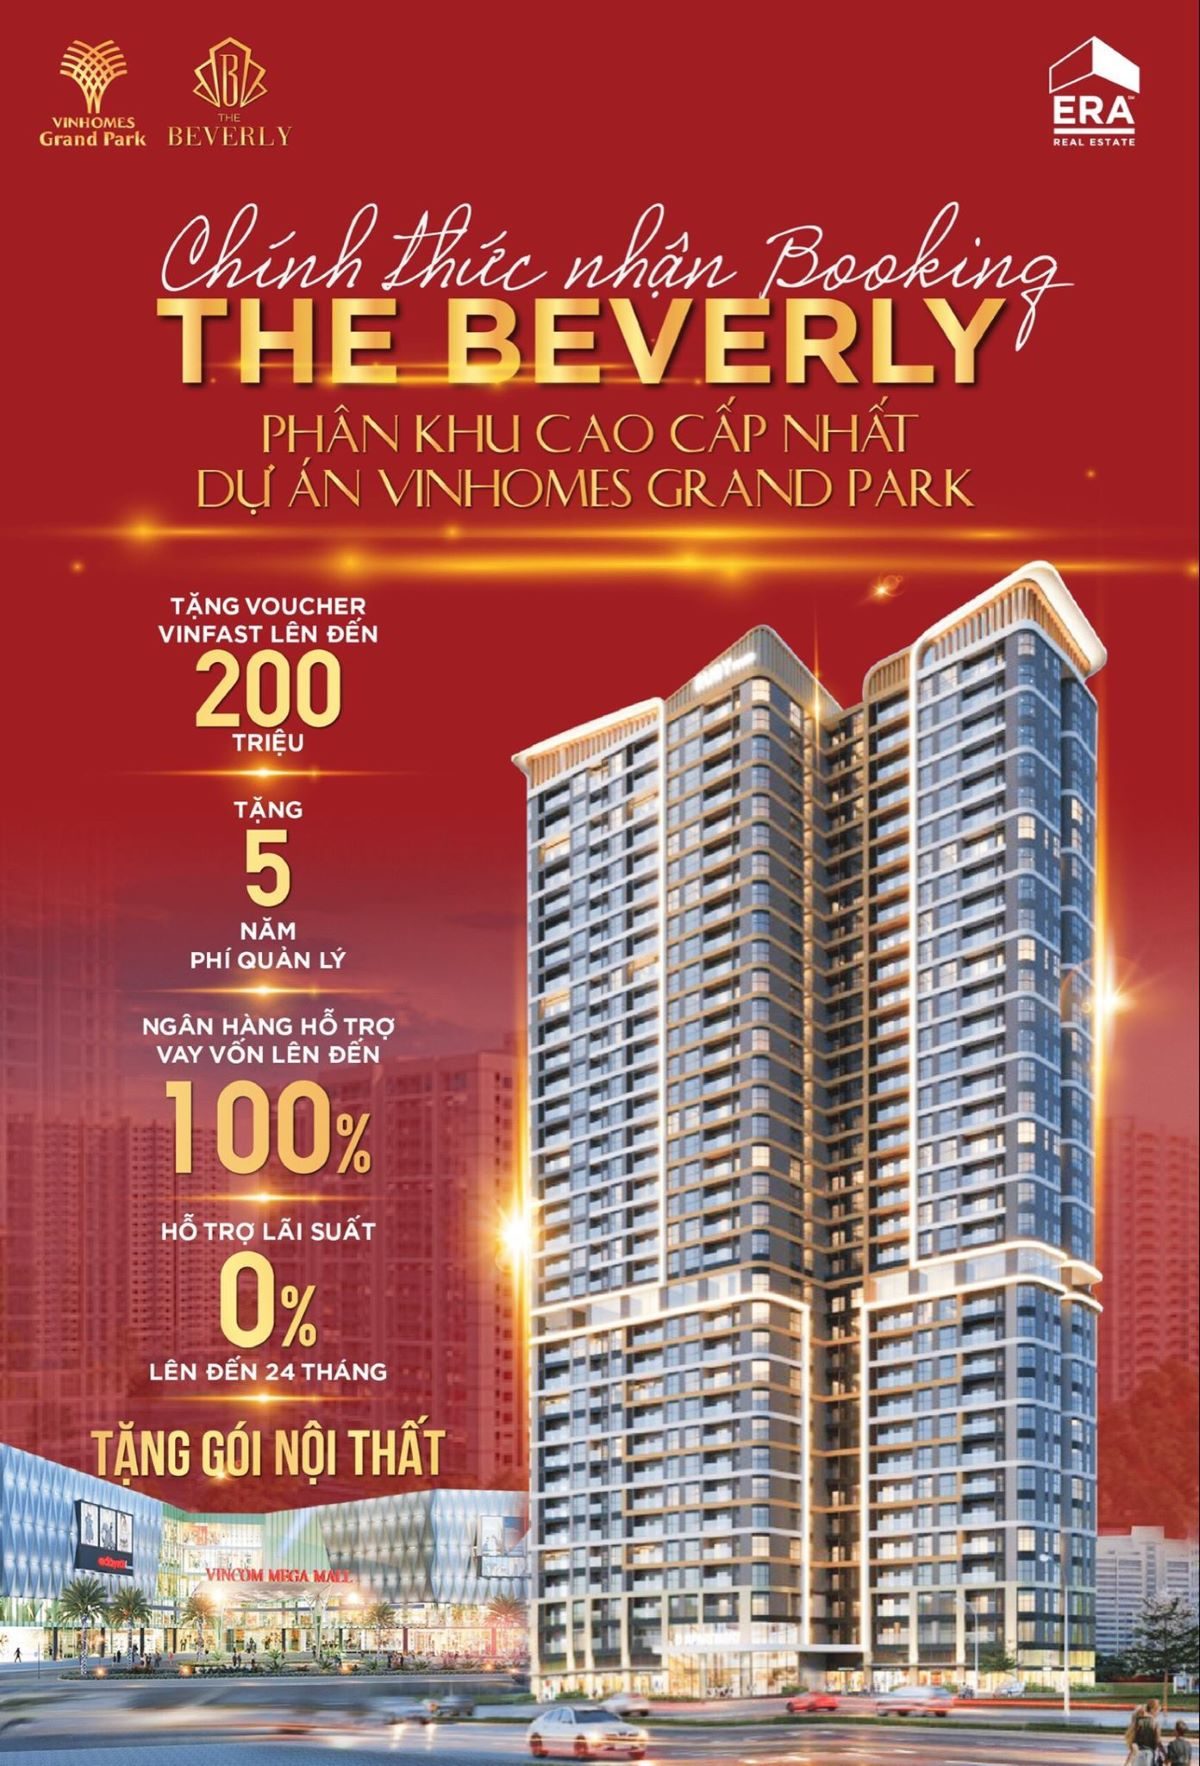 Chính thức giữ chỗ căn hộ cao cấp The Beverly trung tâm Đại đô thị Vinhomes Grand Park sắp ra mắt.